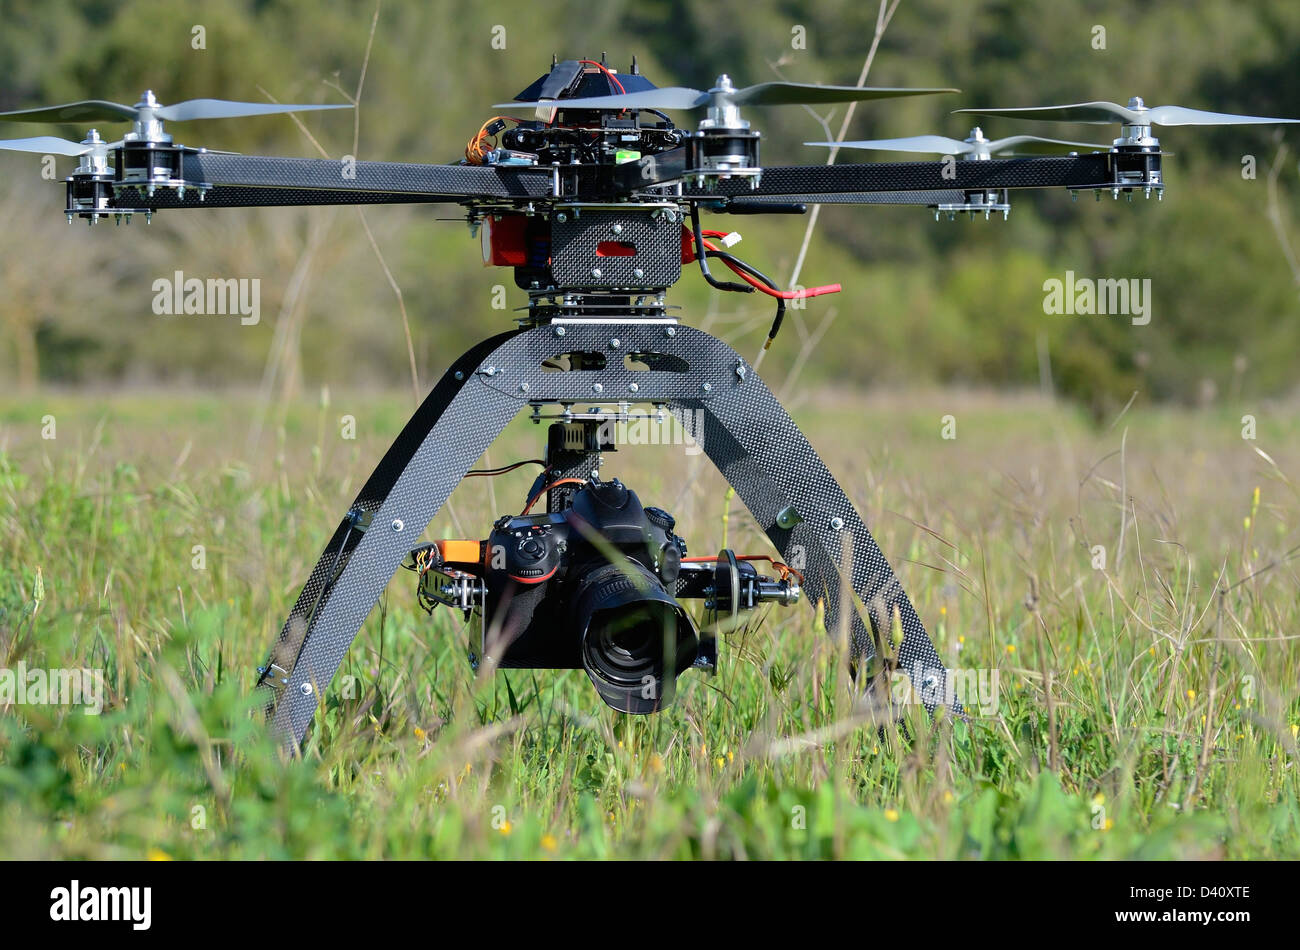 Drone und Digitalkamera auf ein Unmanned Aerial Vehicle (UAV oder Brummen), mit sechs Rotoren, hier für Luftaufnahmen verwendet oder Filmen Stockfoto